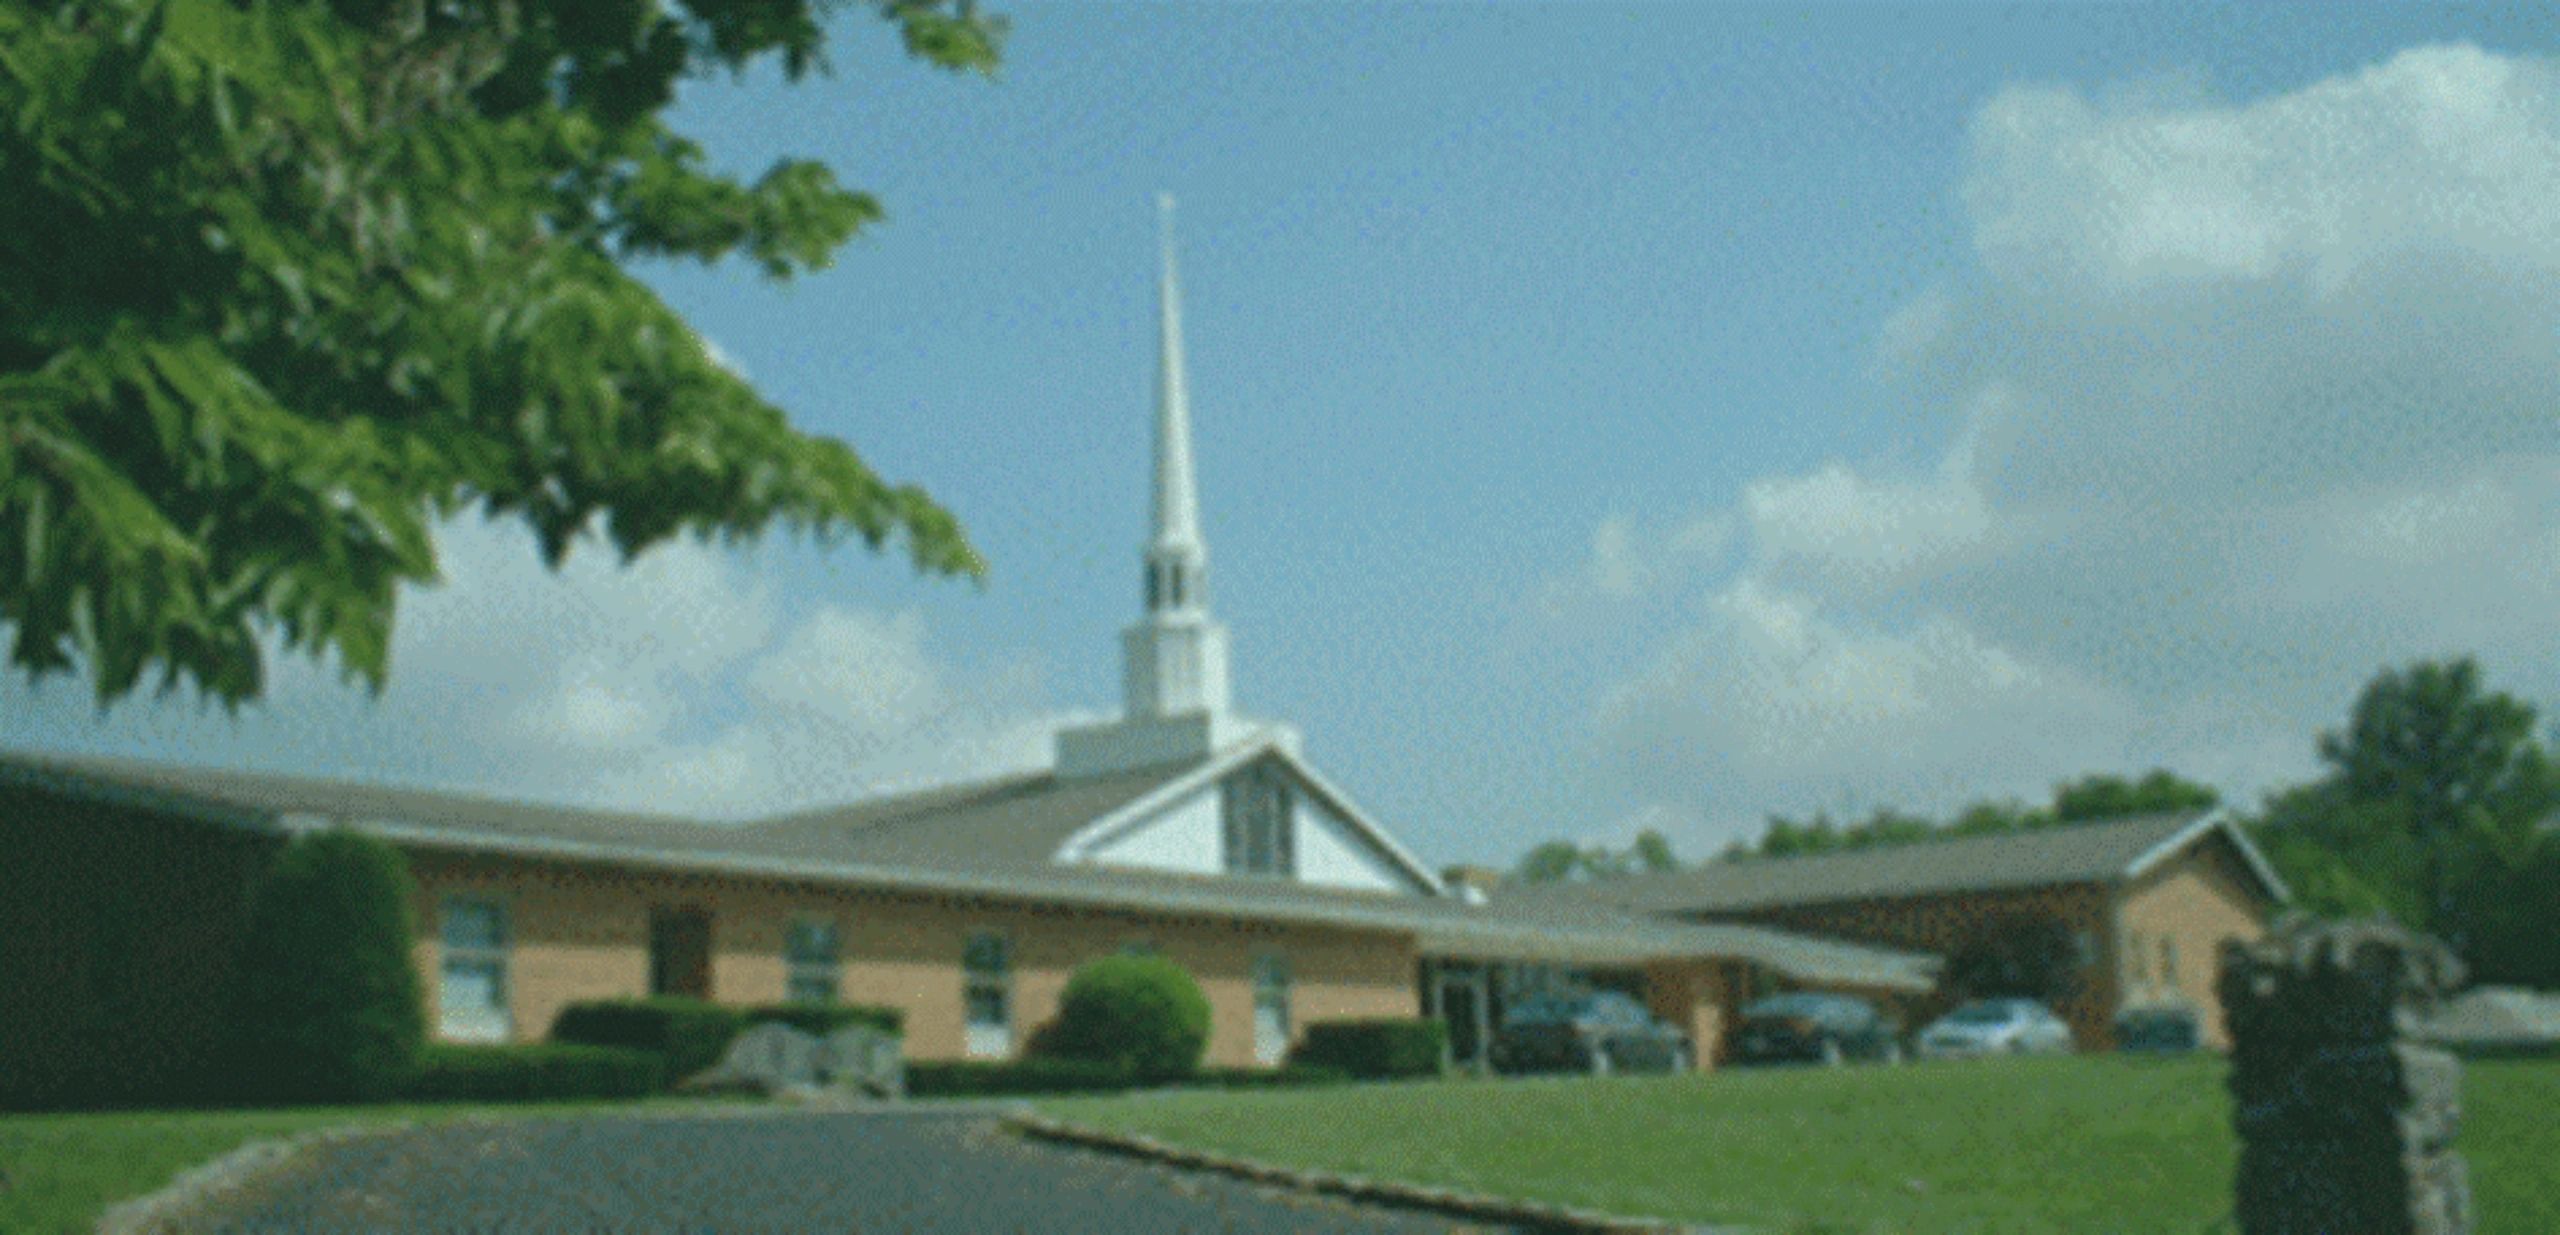 Central Church of the Nazarene in Covington, Kentucky